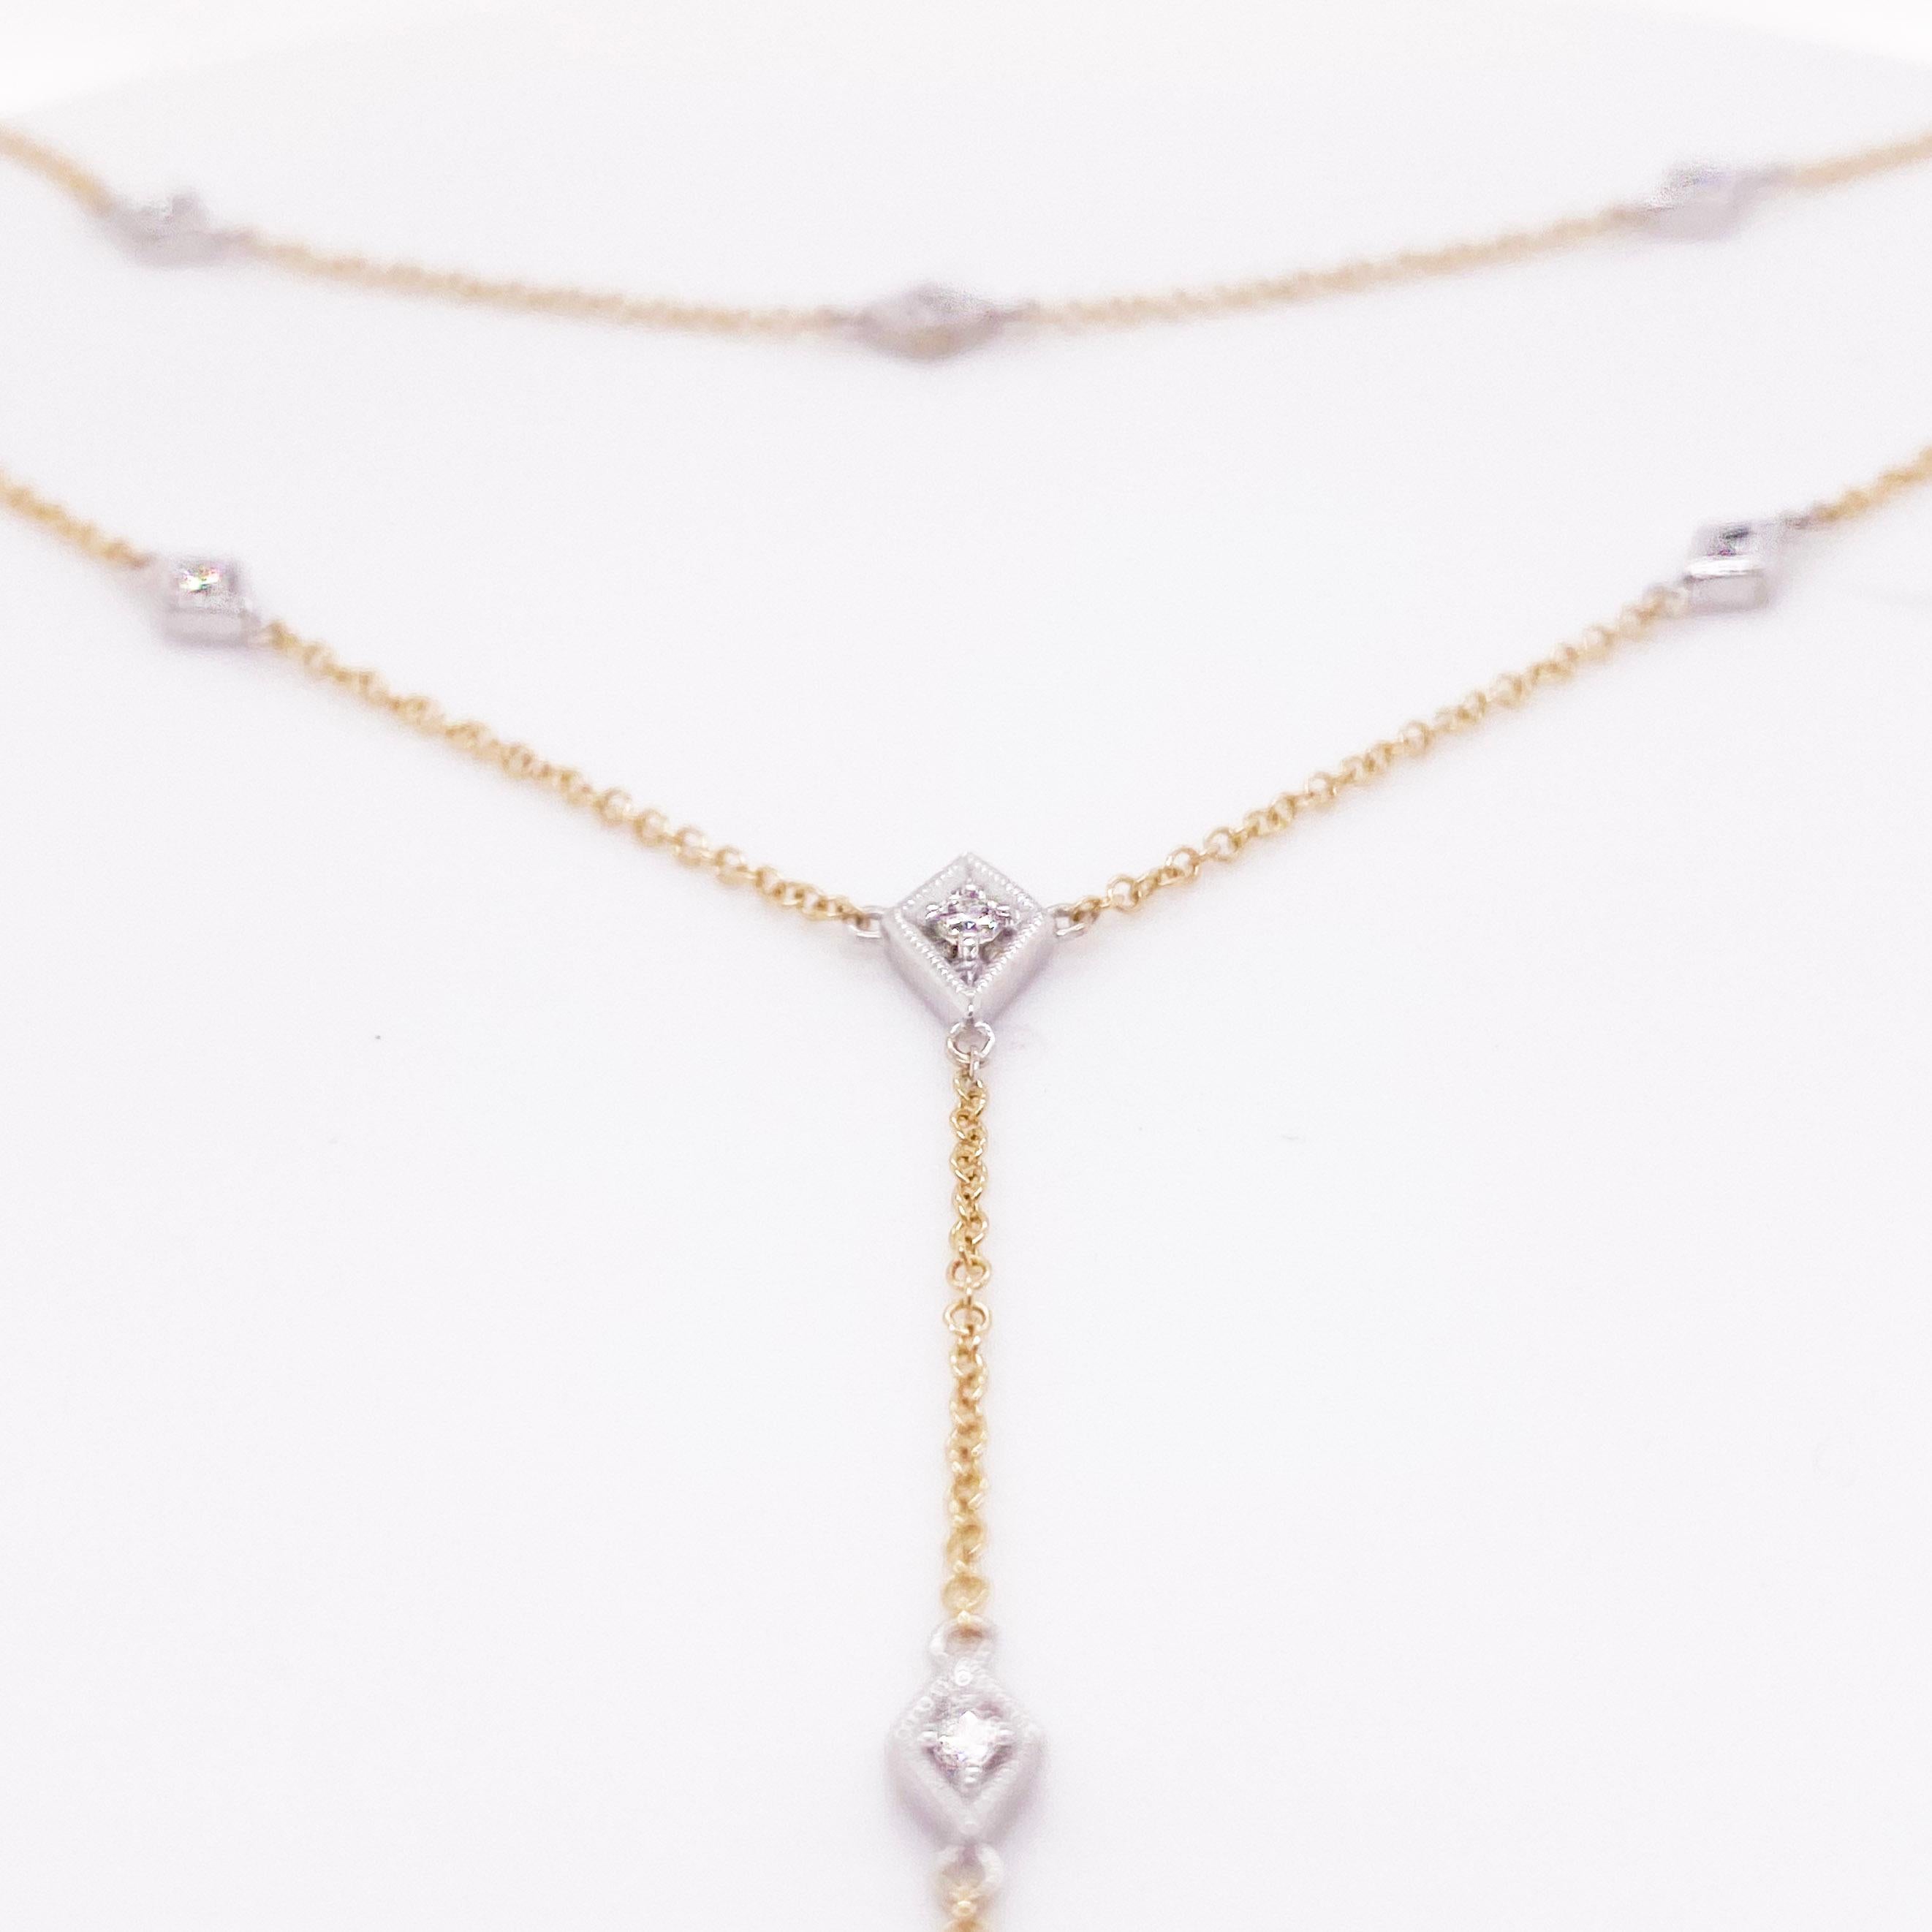 Zeigen Sie Ihre Eleganz mit der Schönheit dieser Halskette. Dieses Stück sieht an jedem Hals atemberaubend aus, denn es besteht aus zwei Strängen aus 14-karätigem Gelbgold mit augenreinen, runden Brillanten! Die diamantförmige Platte, die die runden